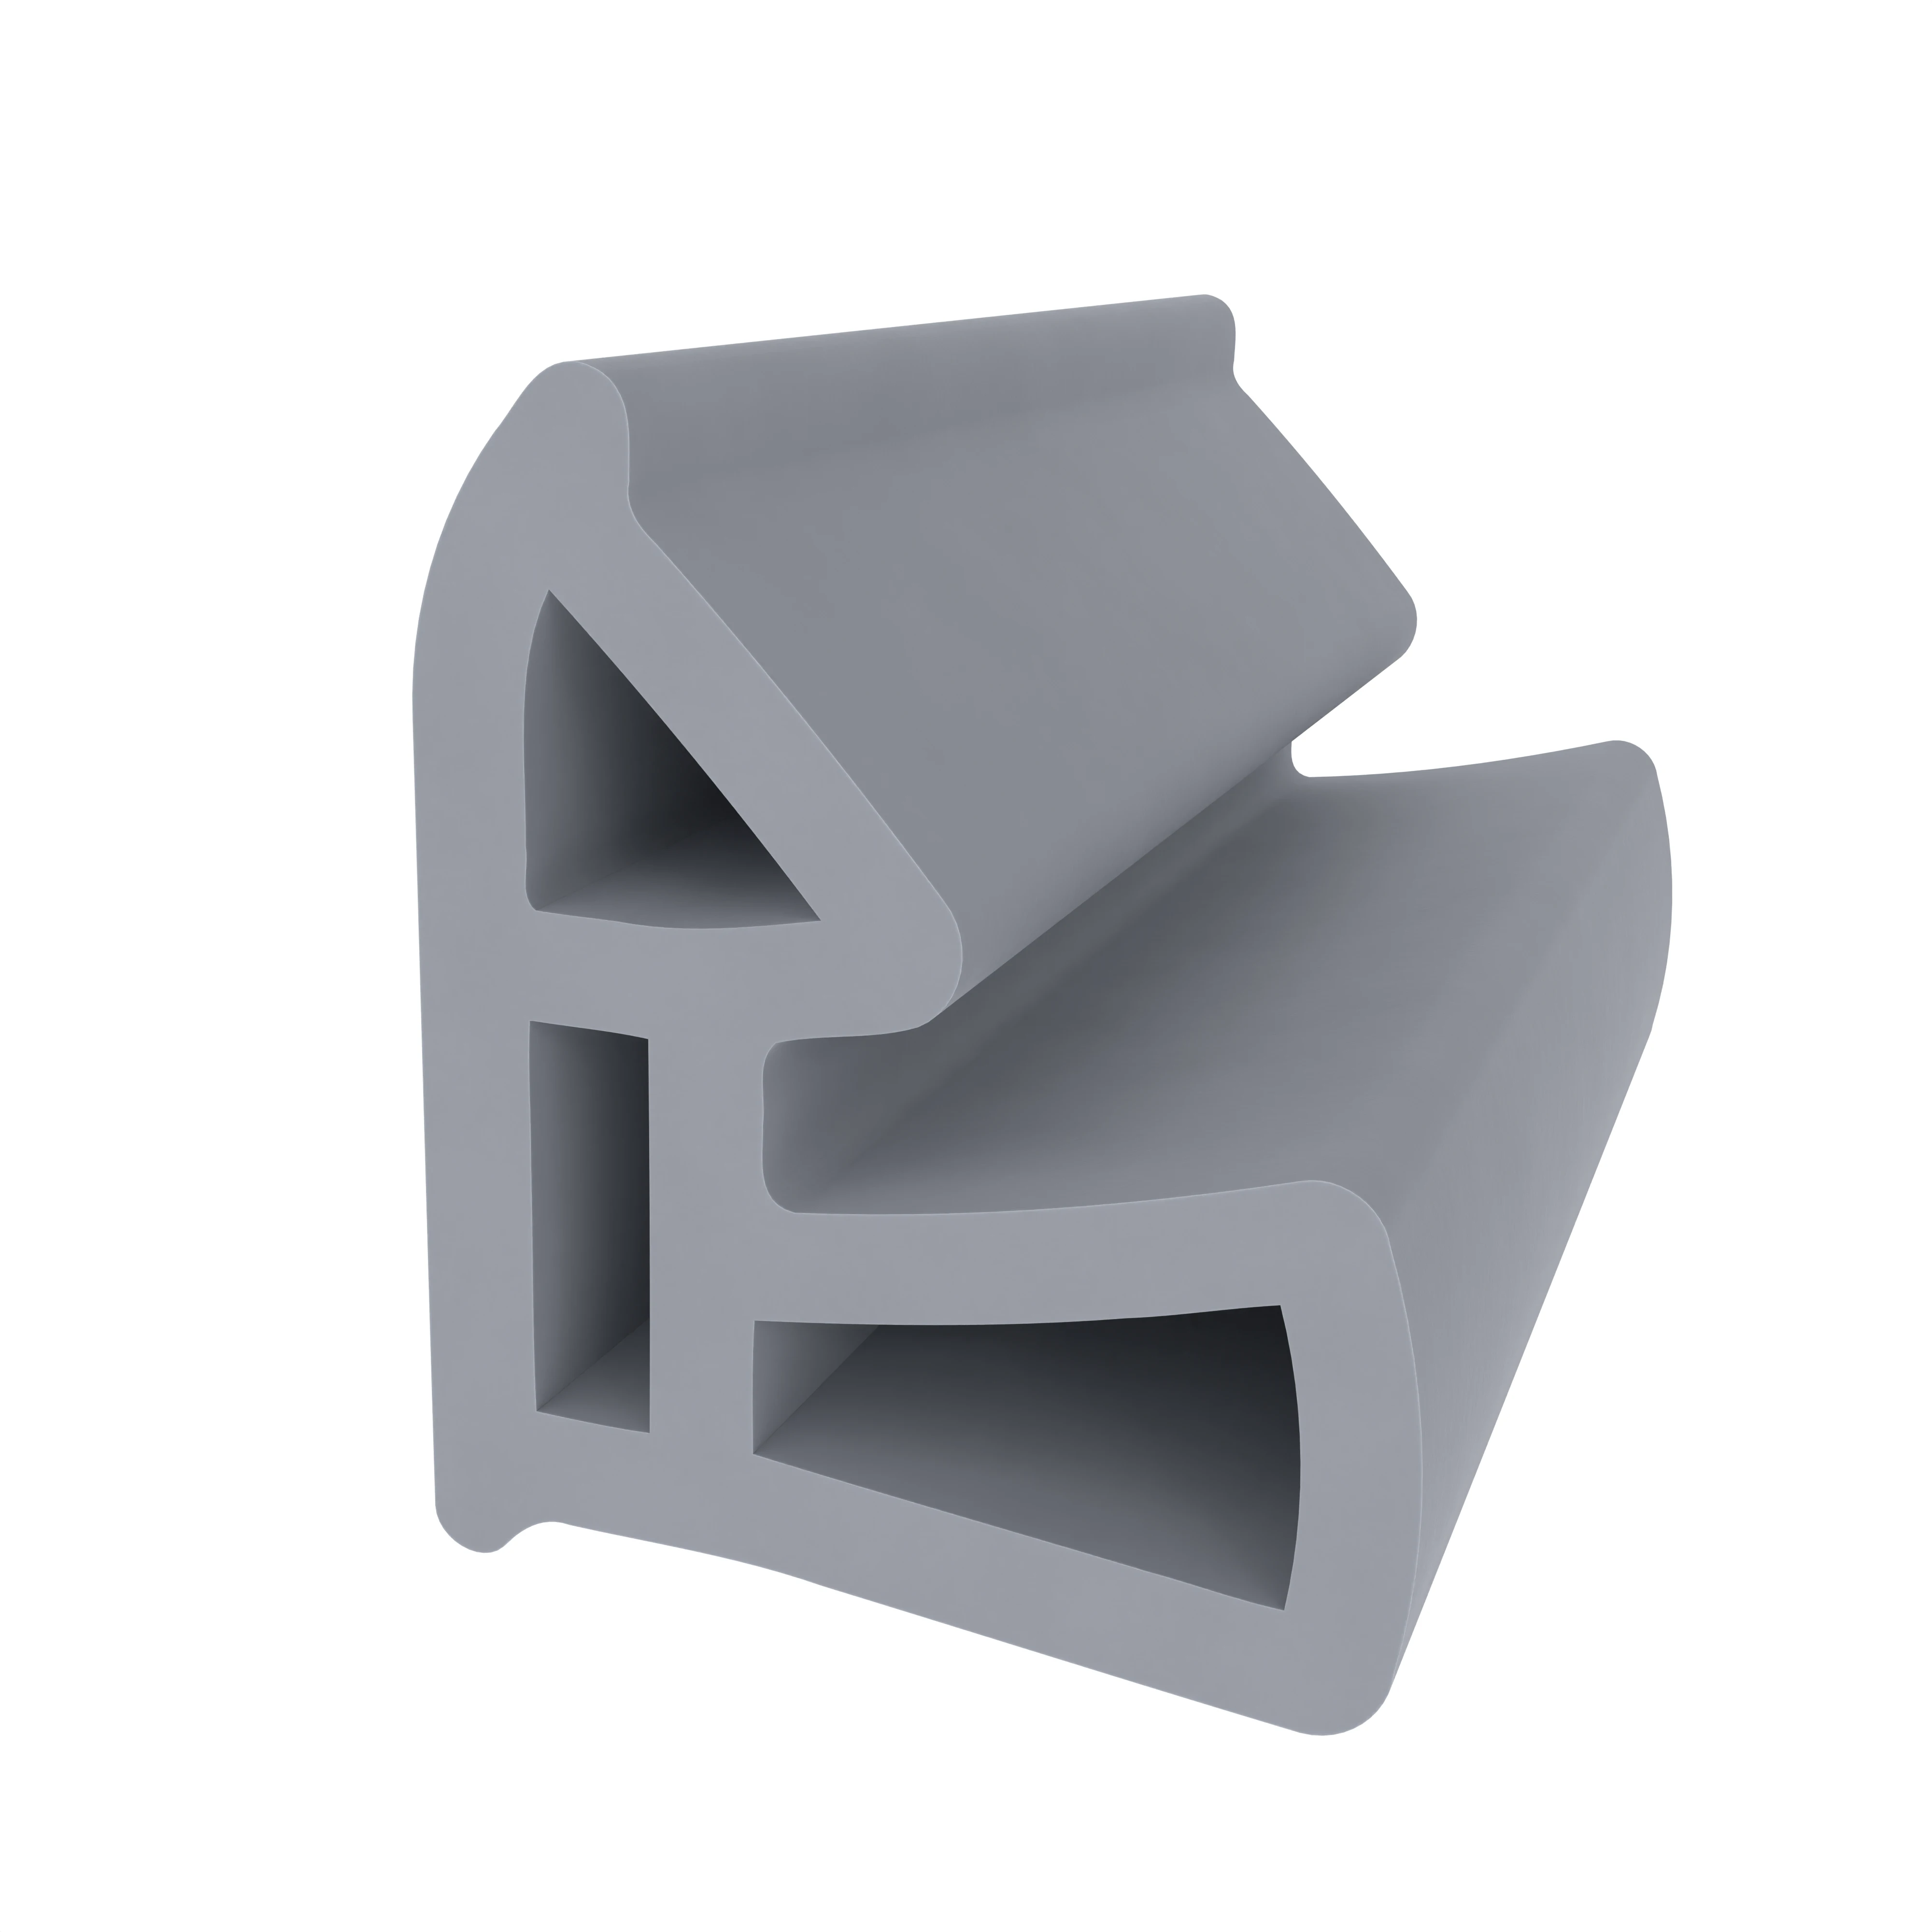 Stahlzargendichtung für hinterschrnittene Nut | 13 mm Breite | Farbe: grau